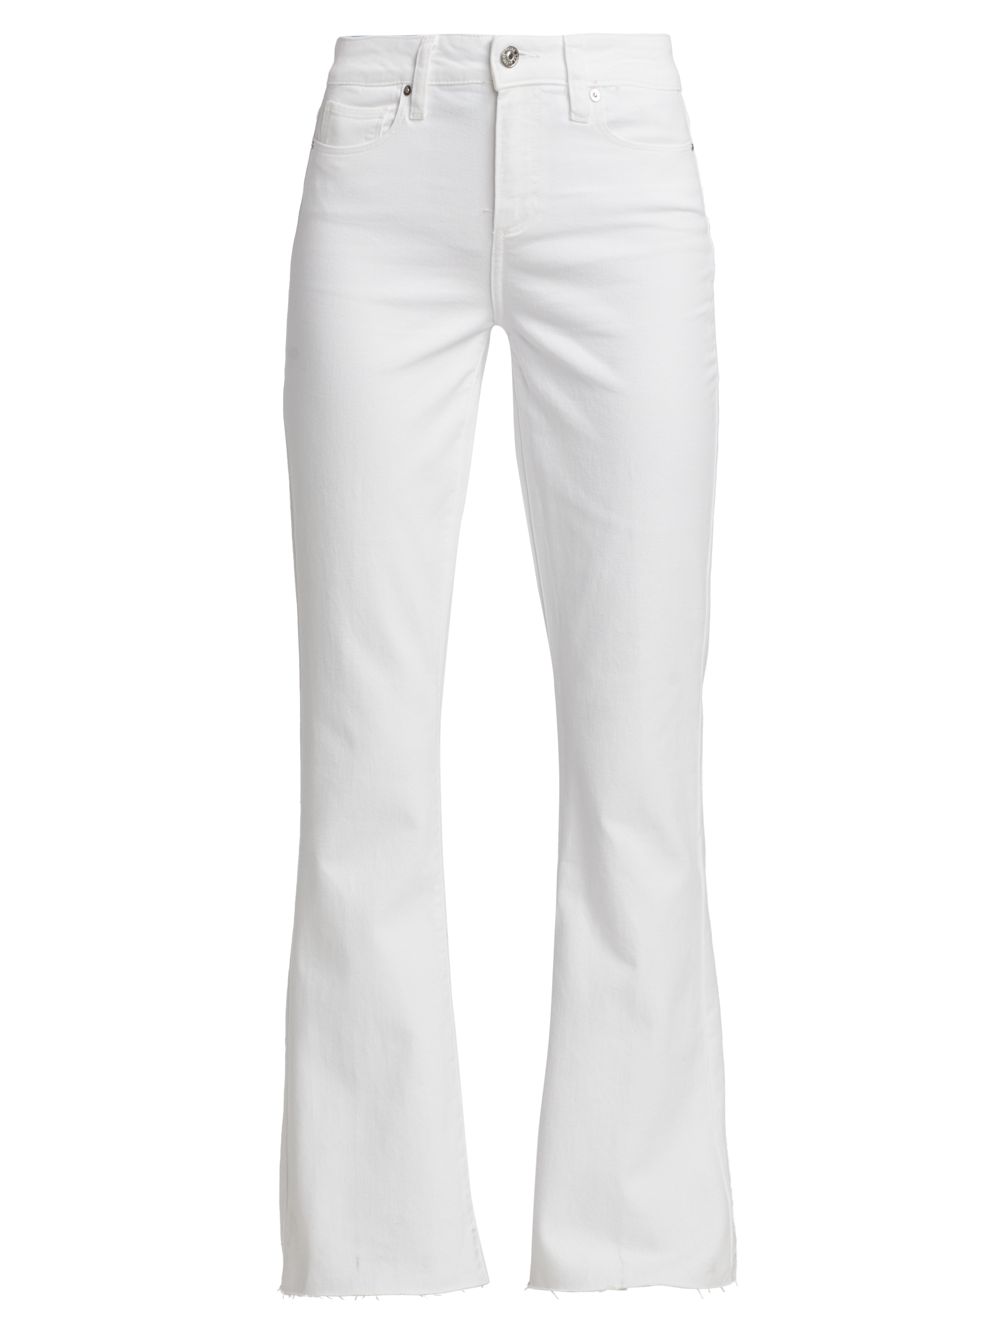 цена Расклешенные джинсы Laurel Canyon Paige, белый